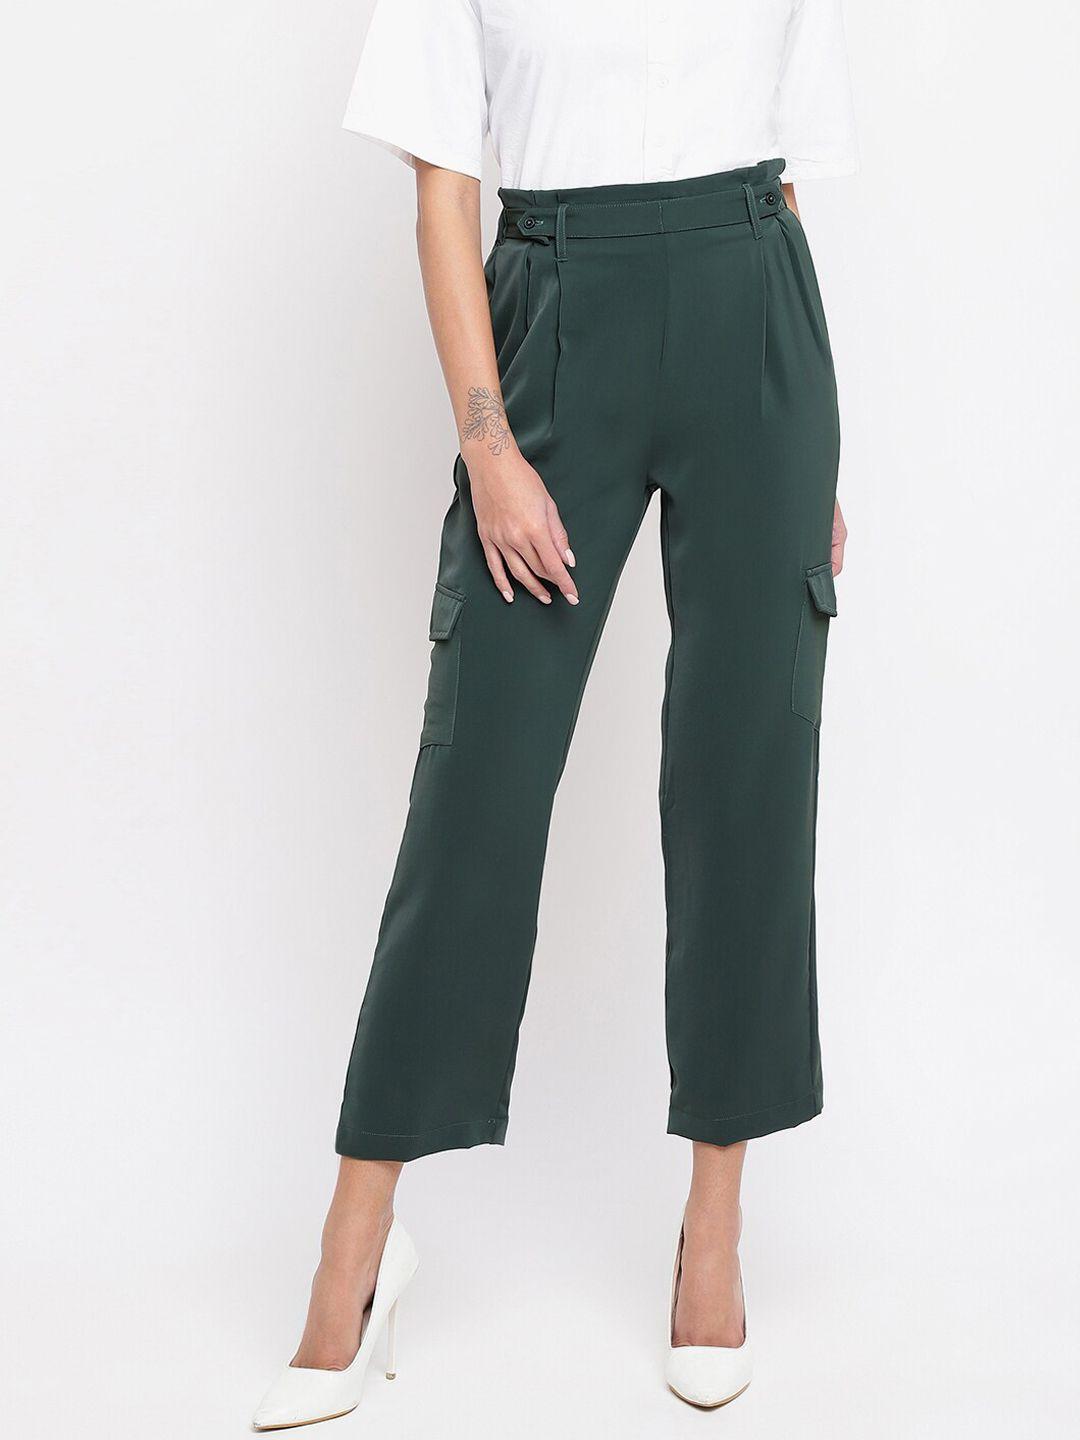 latin-quarters-women-green-cargos-trousers